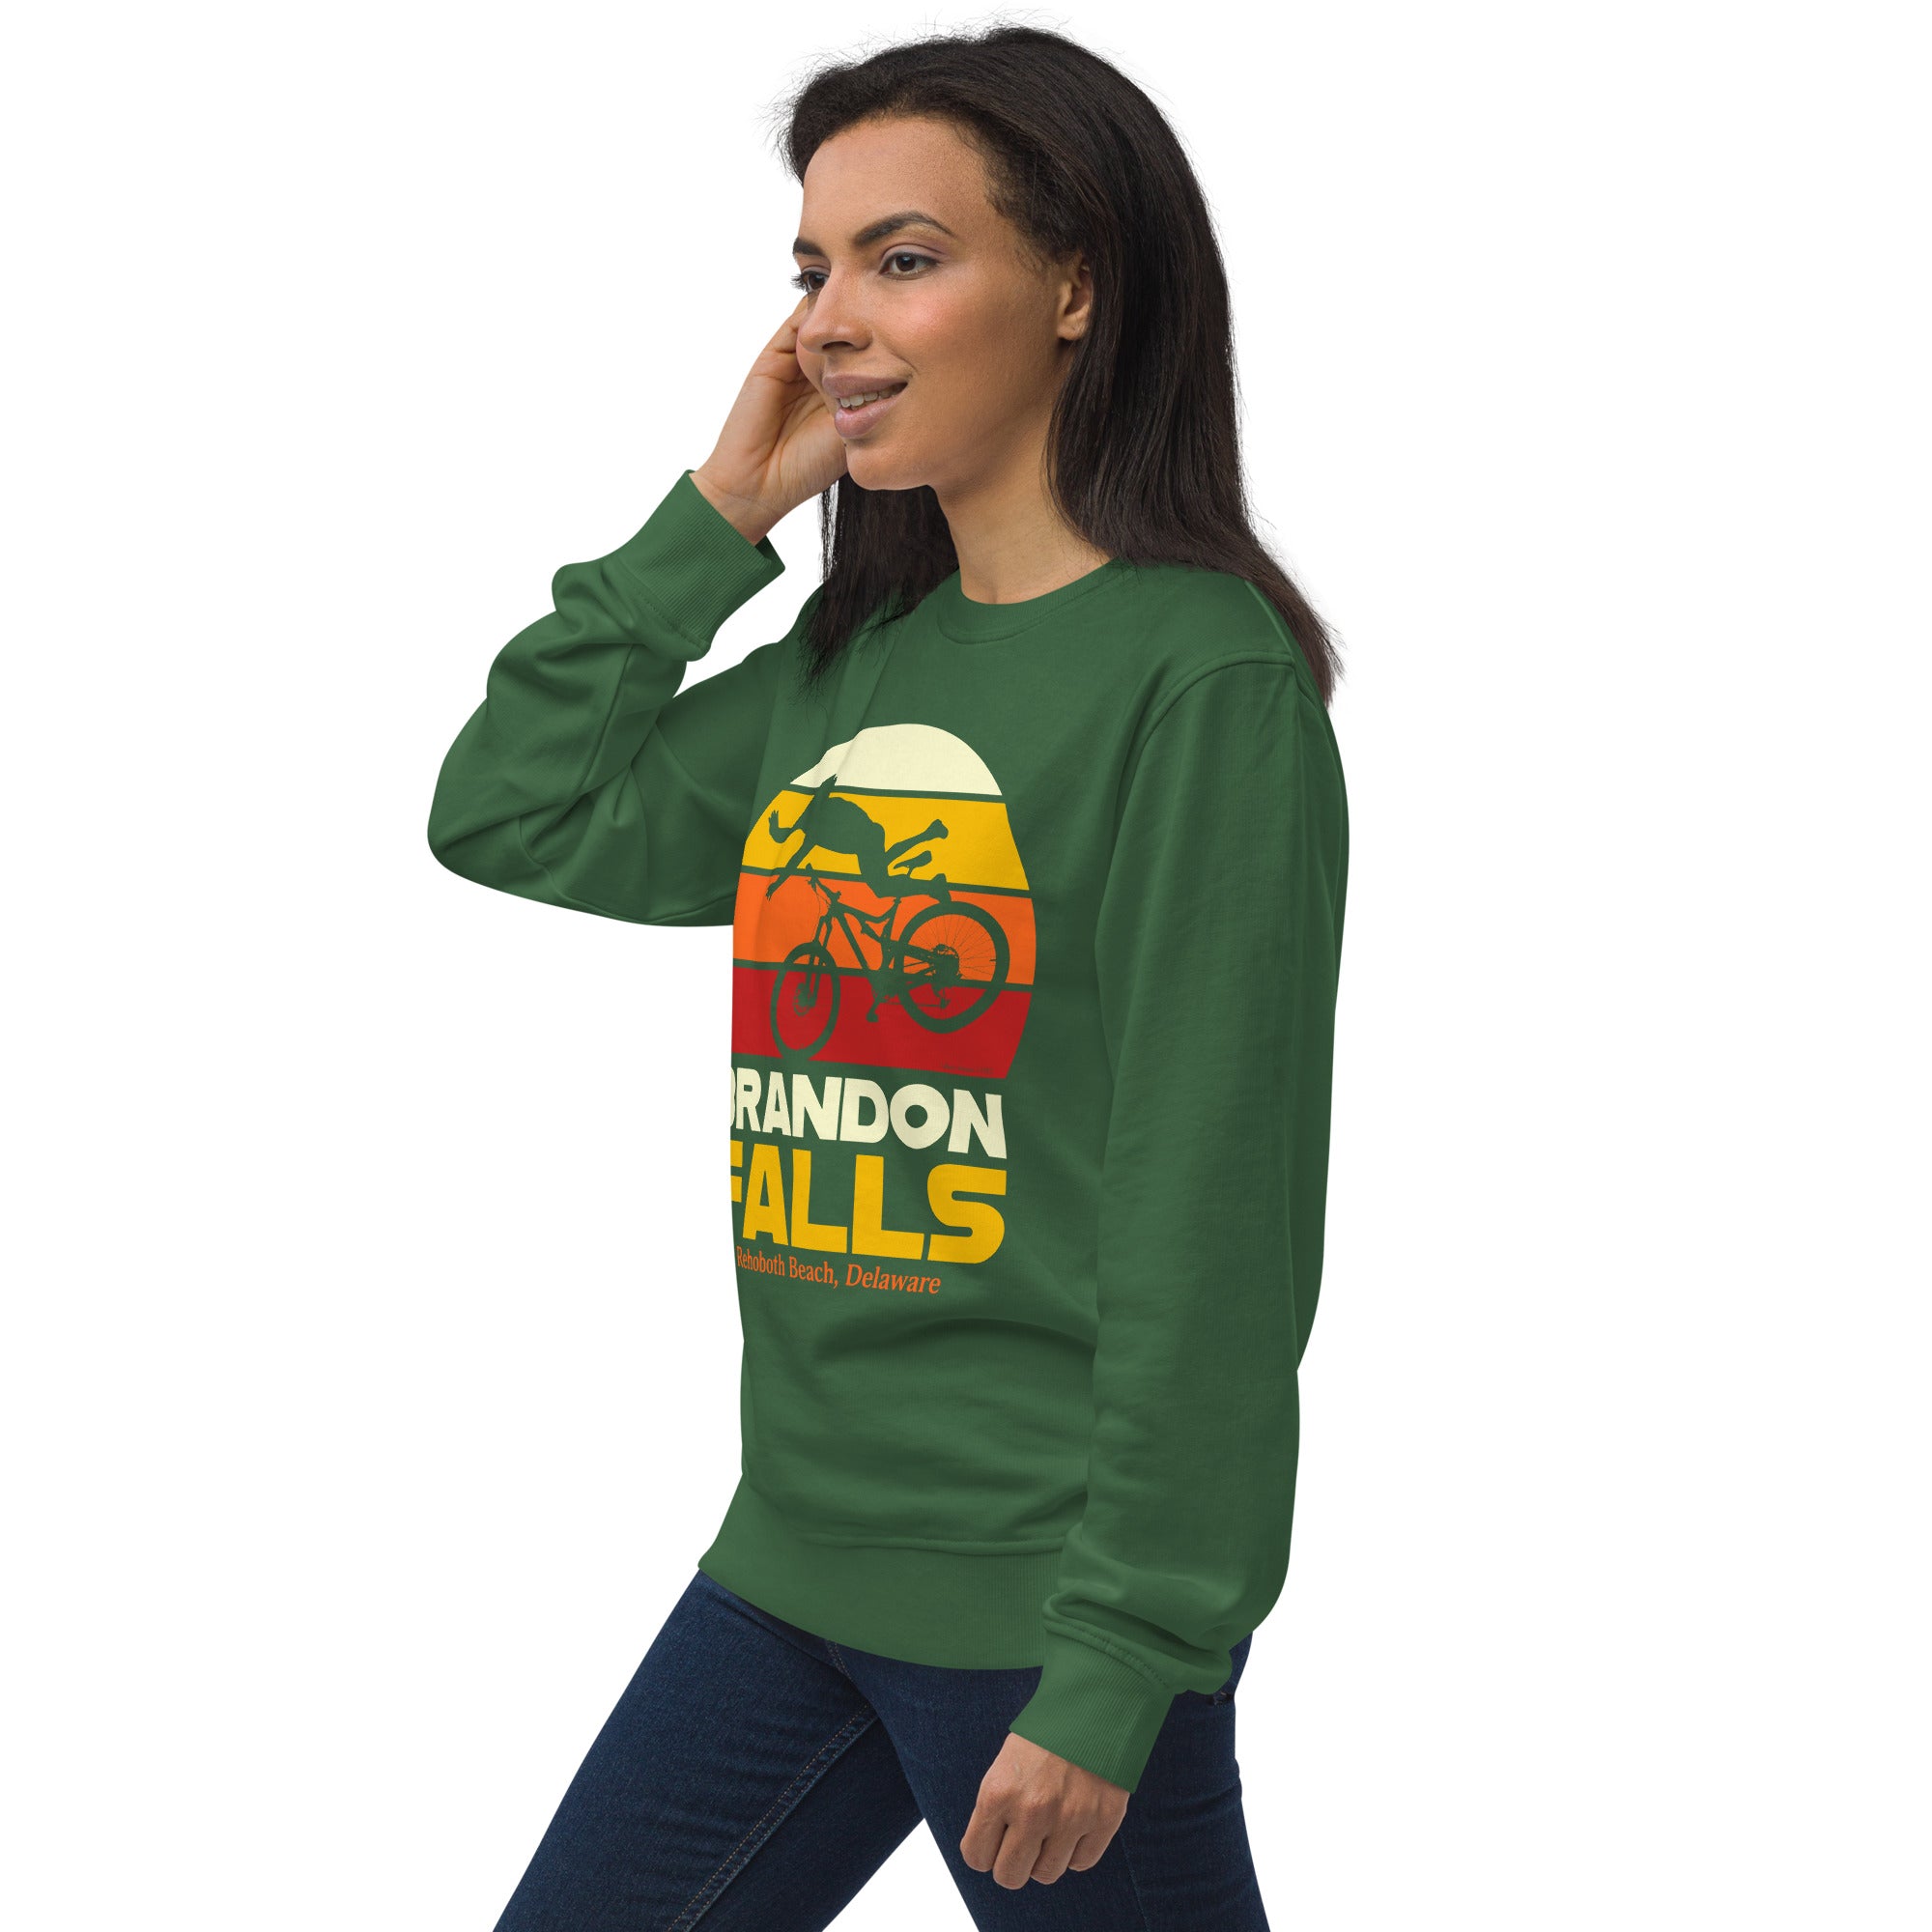 Brandon Falls Organic Sweatshirt